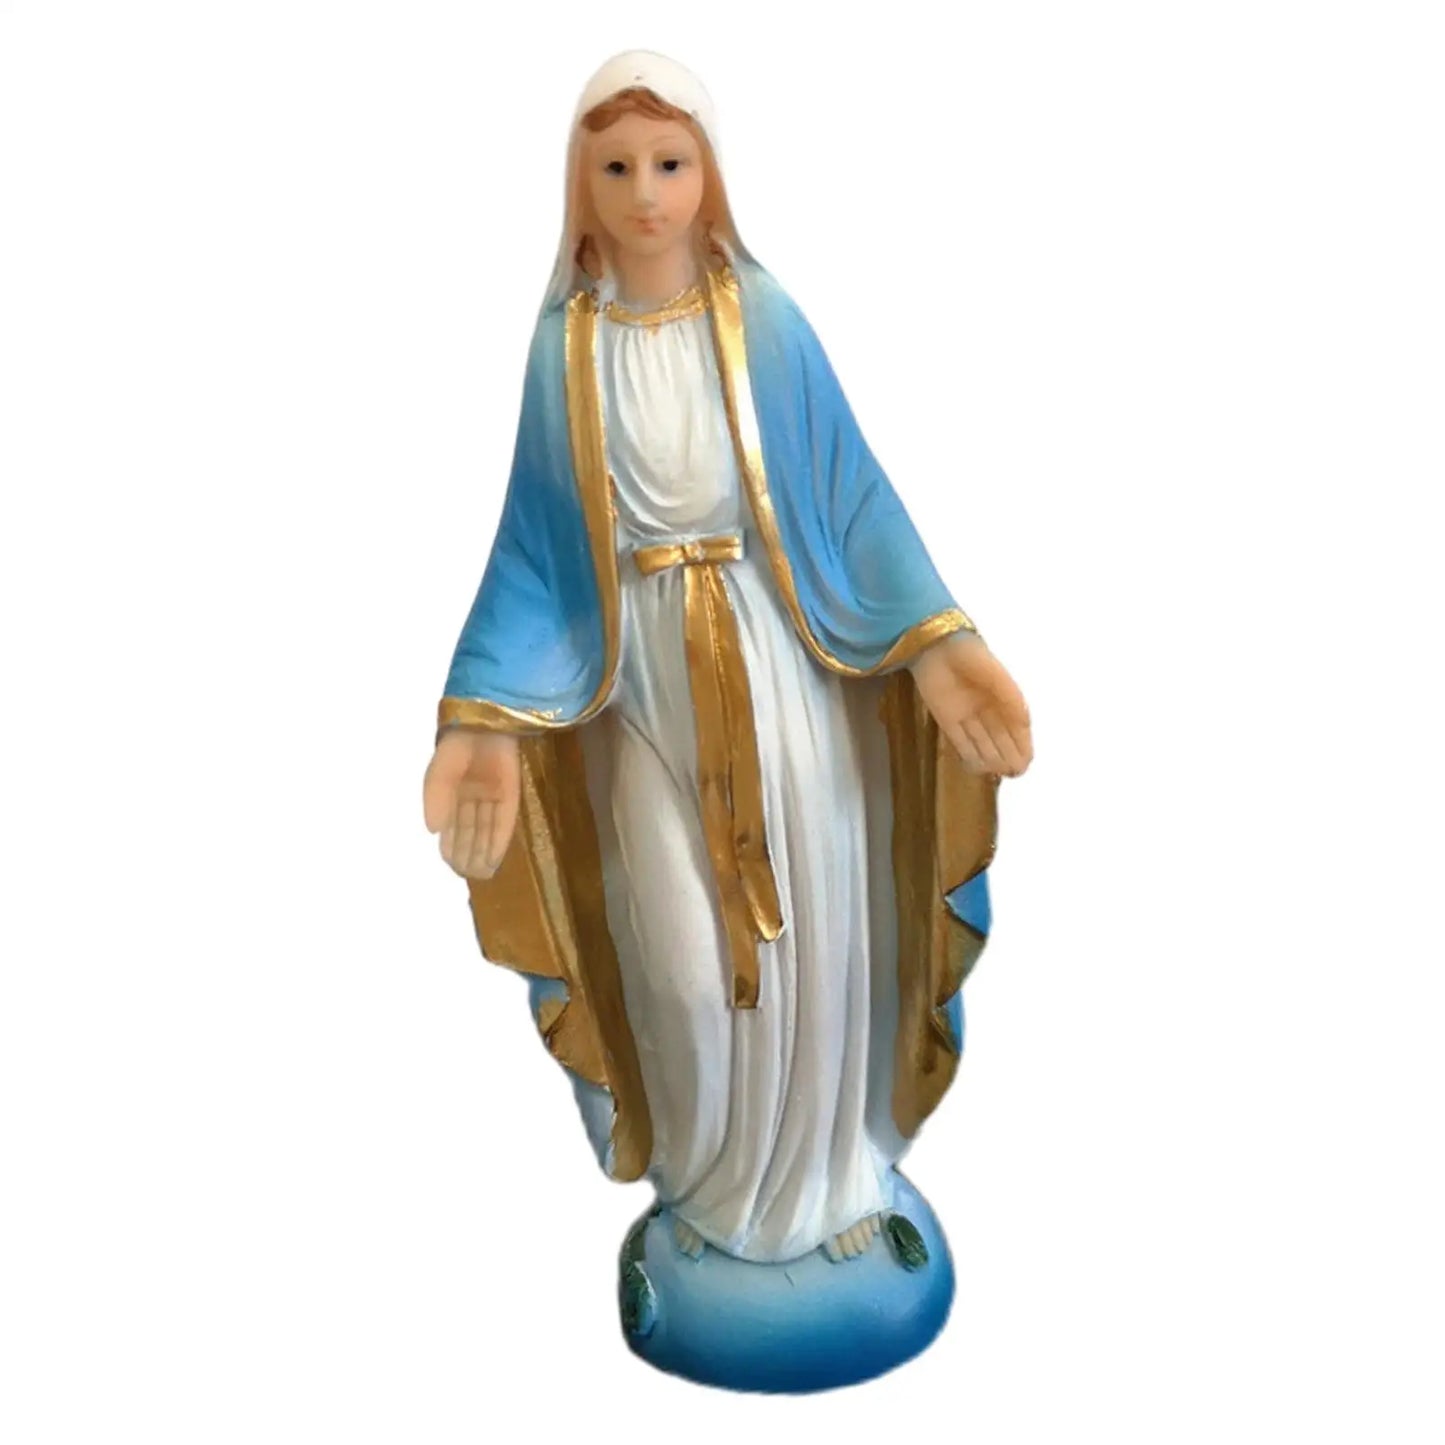 Statue der Jungfrau Maria, Kunstwerk, 13 cm, Sammlung, Schreibtisch-Display, religiöse Statue aus Kunstharz, für Regal, Schlafzimmer, Schreibtisch, Kirche, Büro